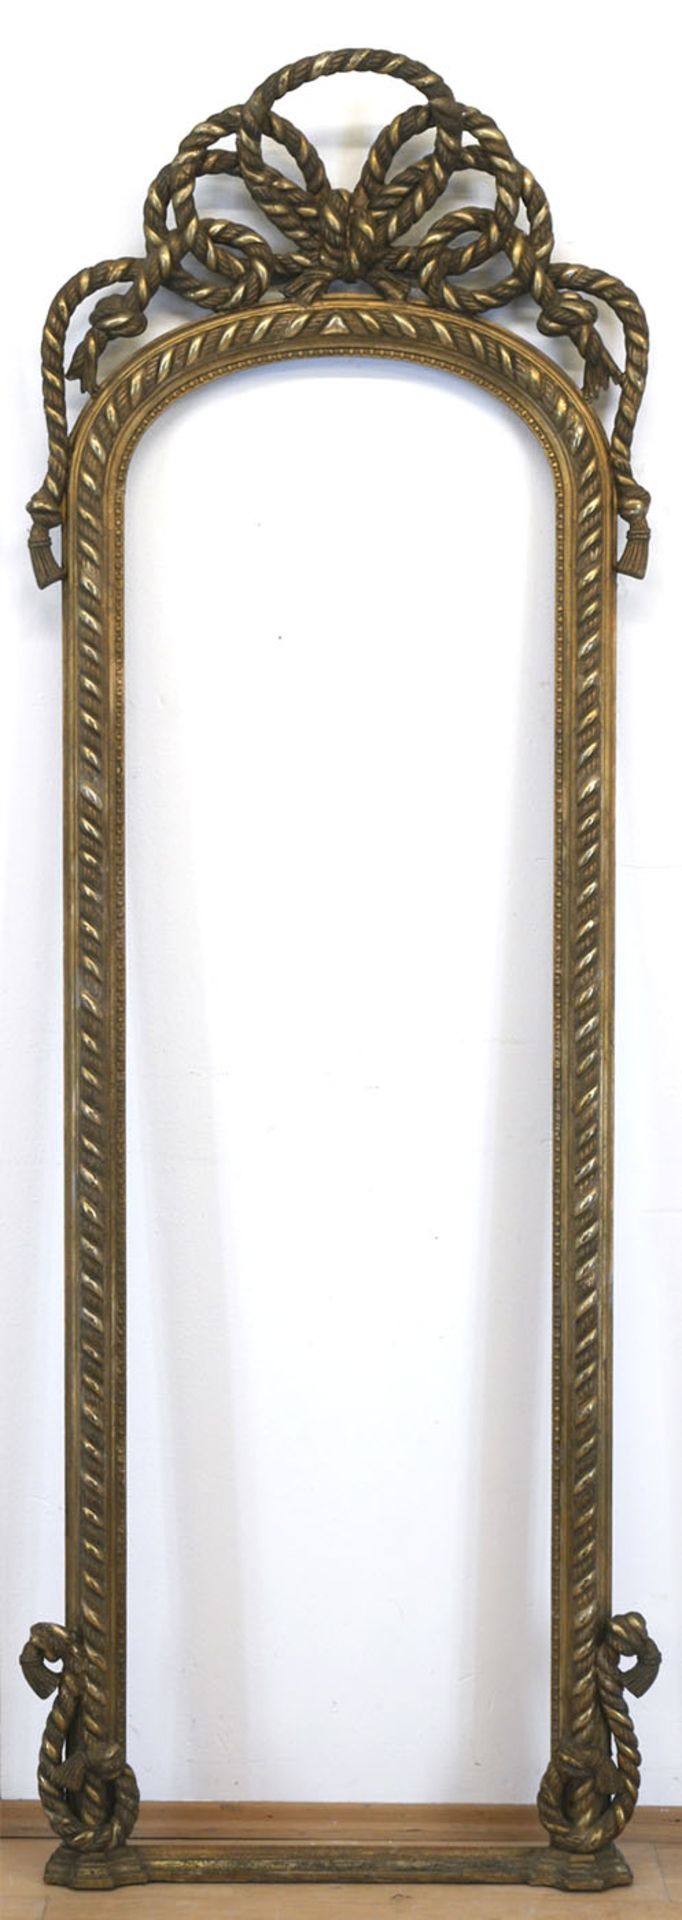 Prunkspiegelrahmen, um 1860, Holz, Stuck, vergoldet, mit verschlungener Kordelbekrönung, 210